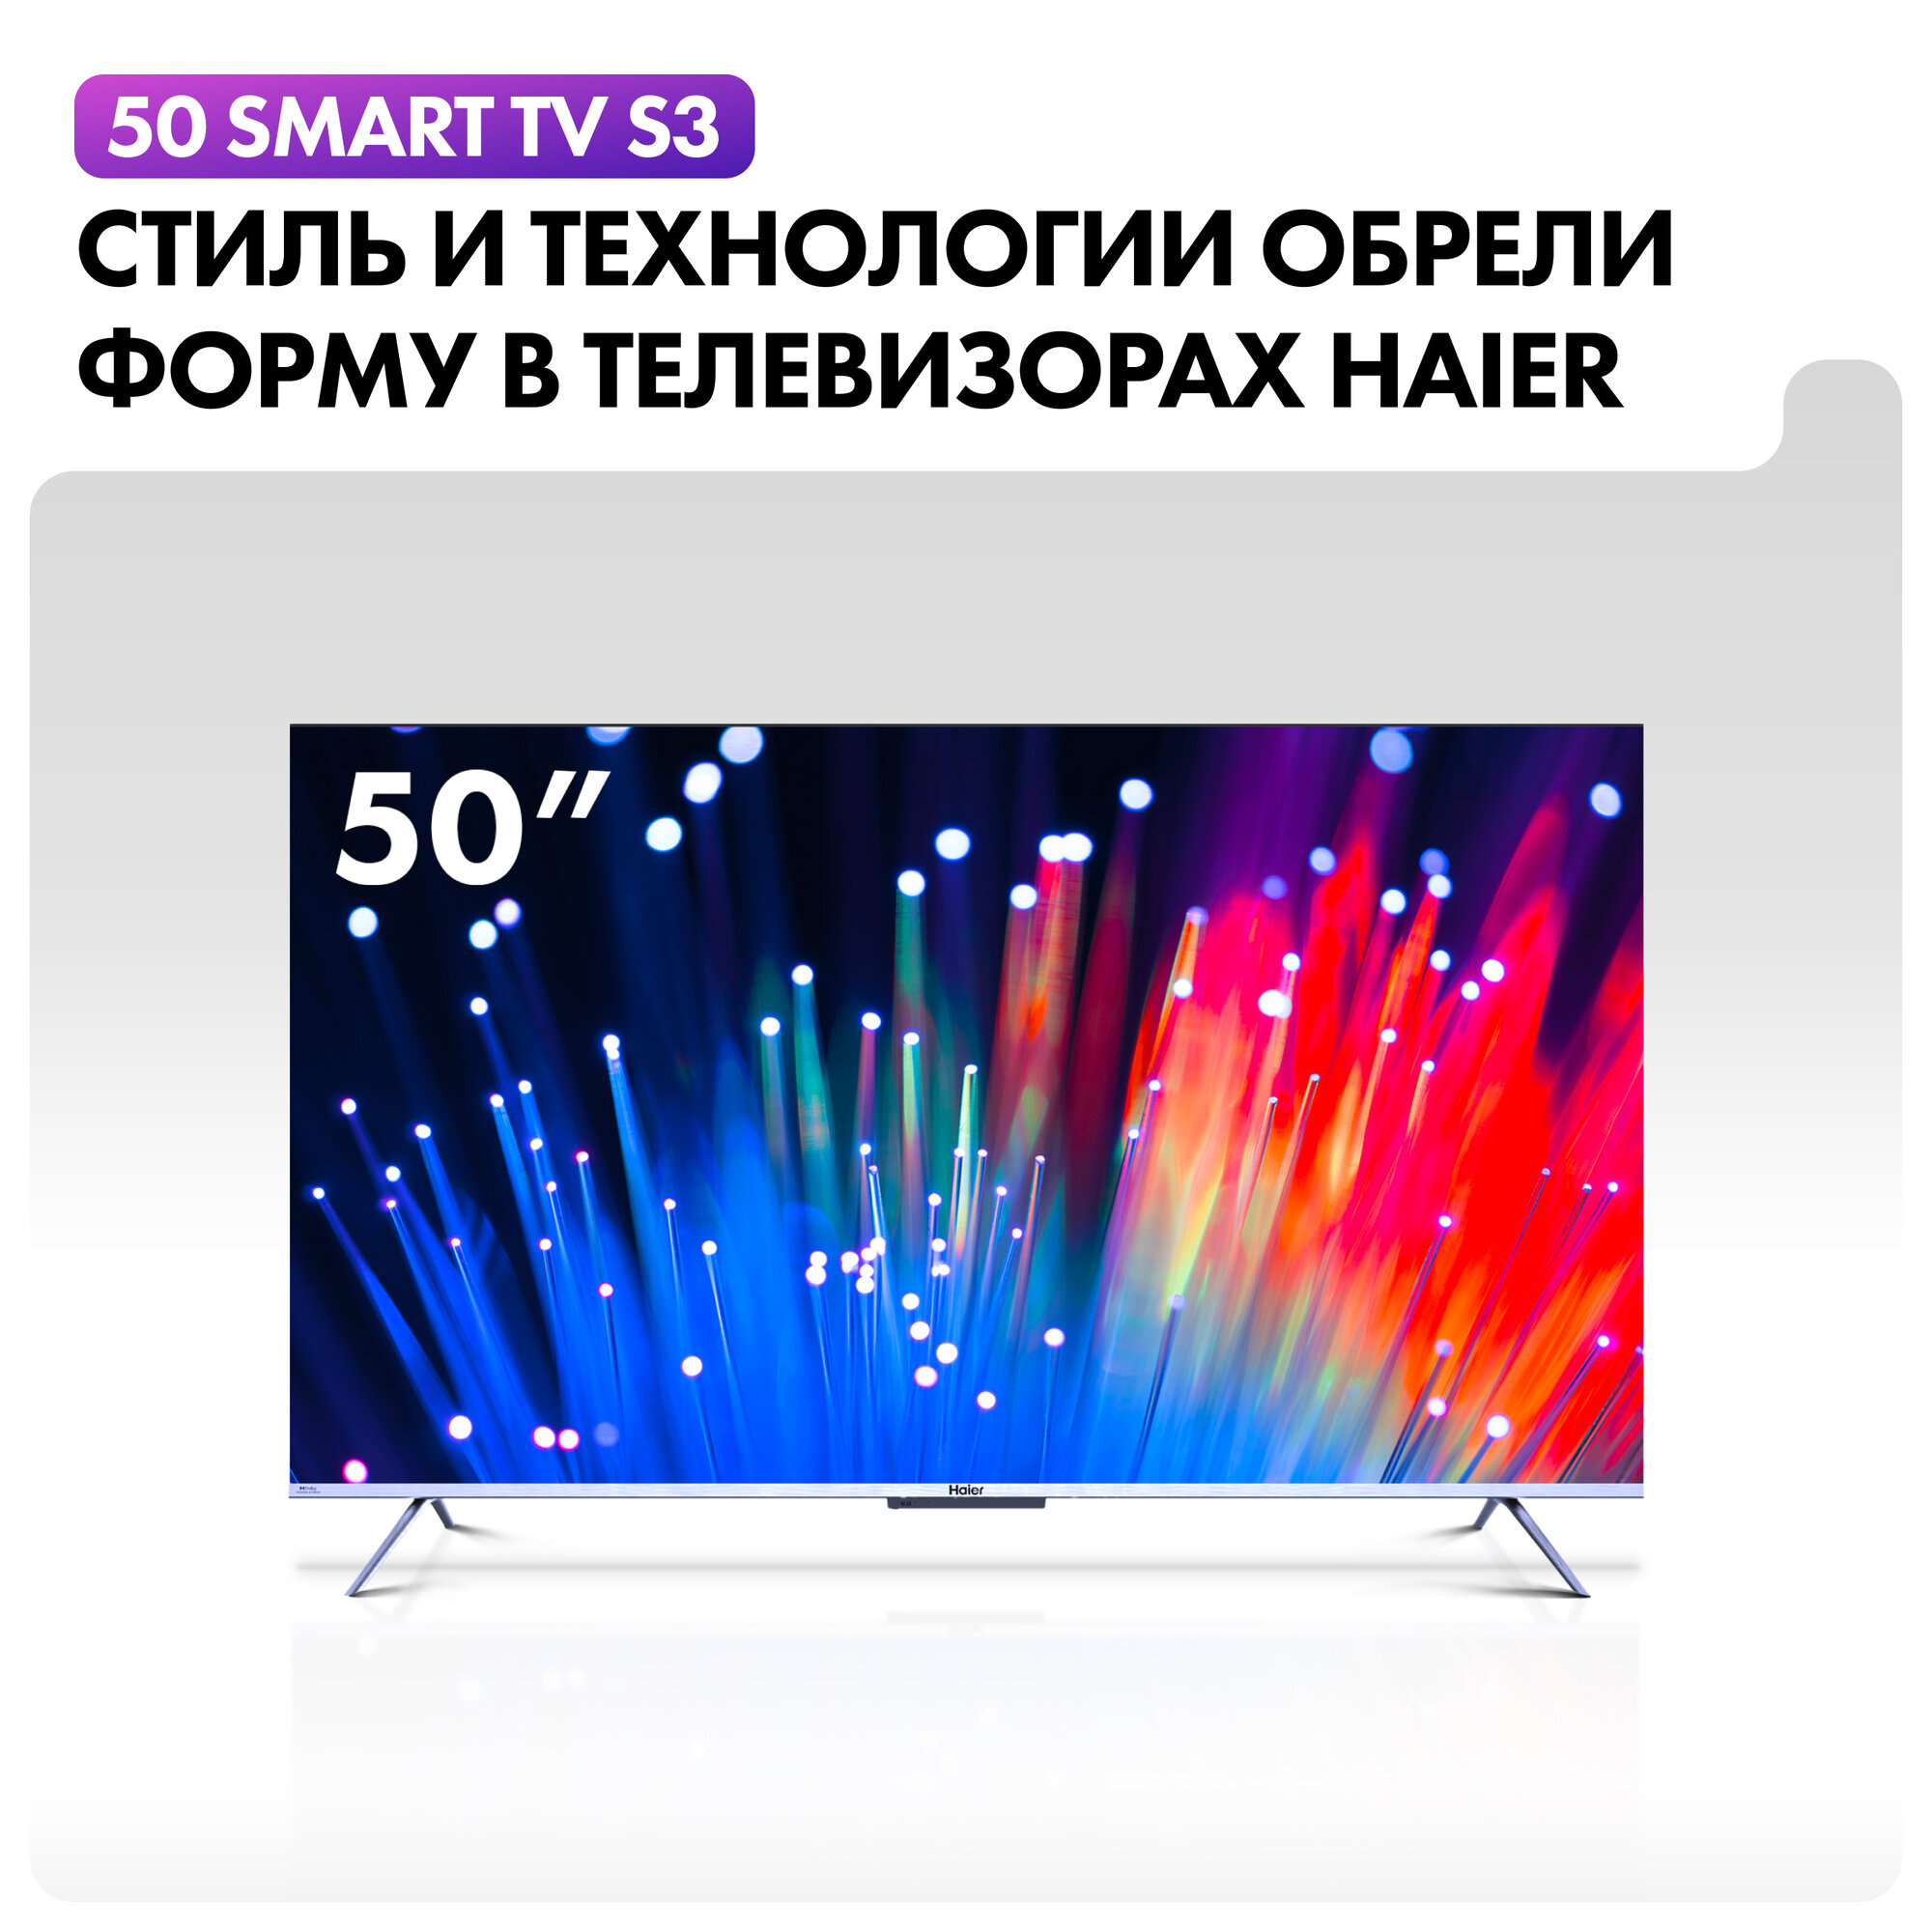 4K (Ultra HD) Smart телевизор Haier - фото №2